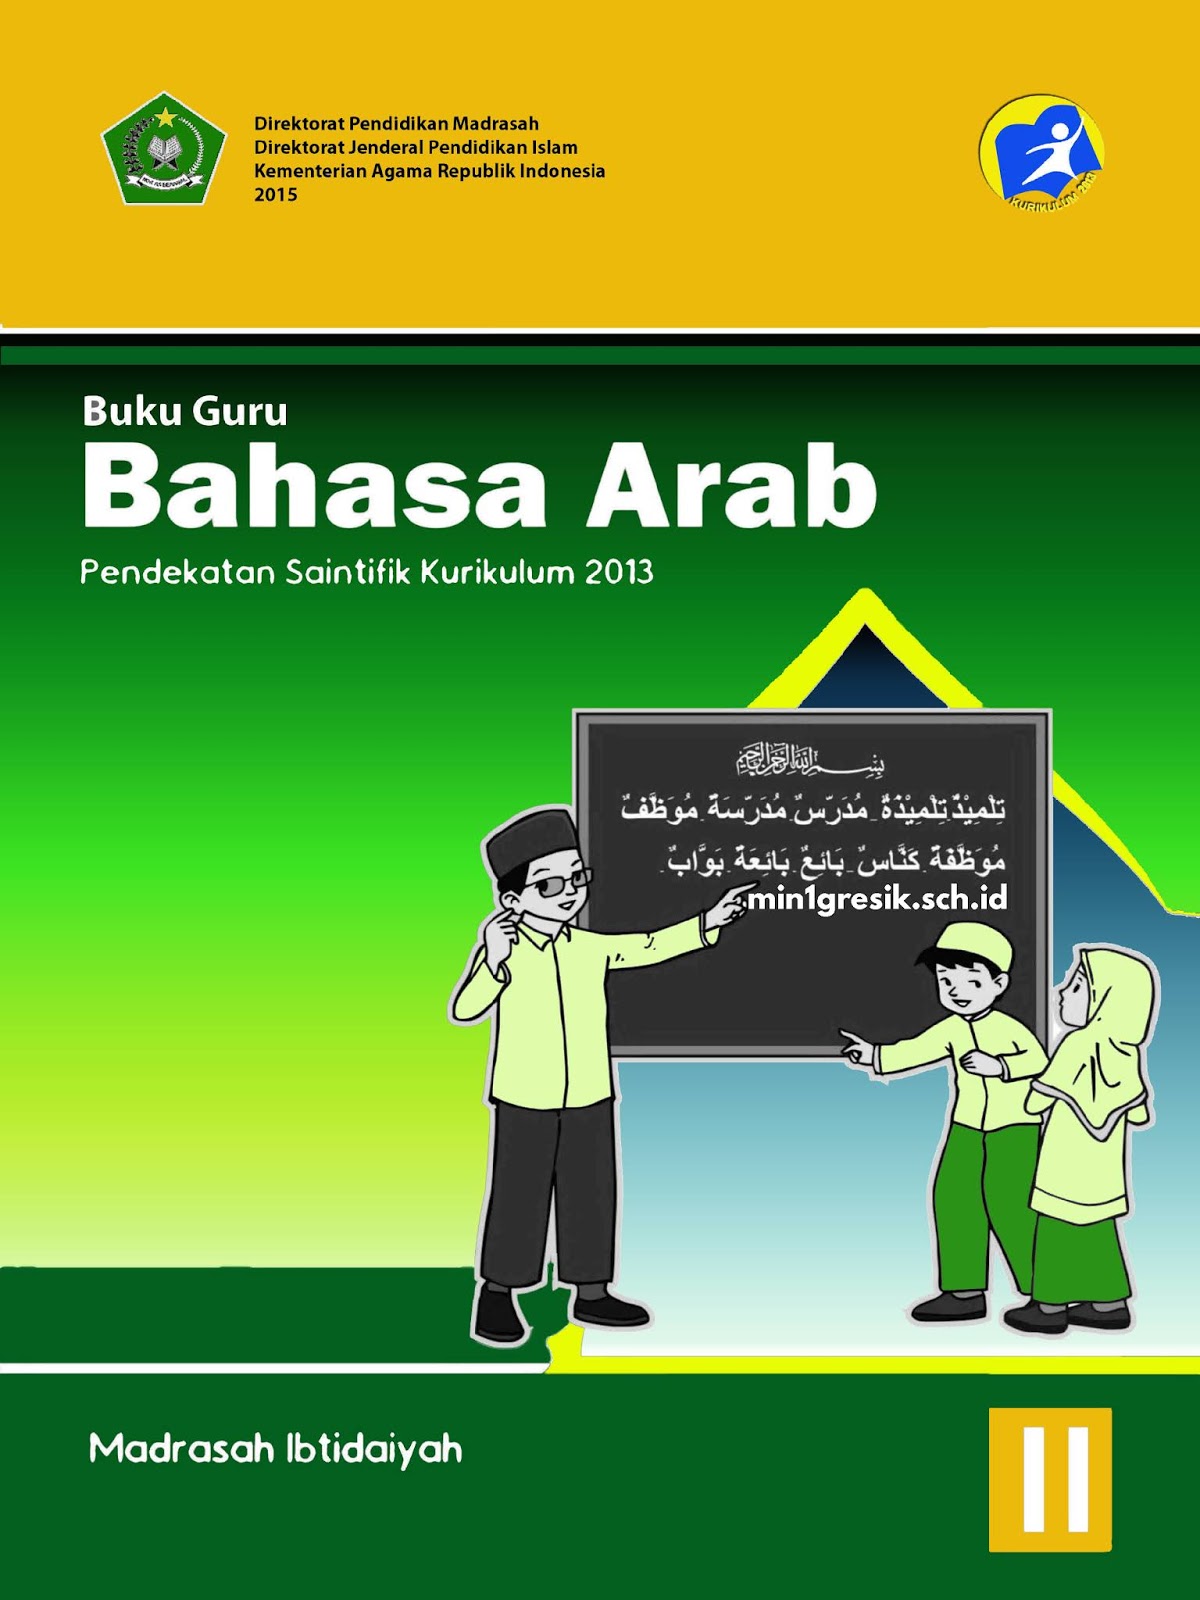 Buku Bahasa Arab Mi K13